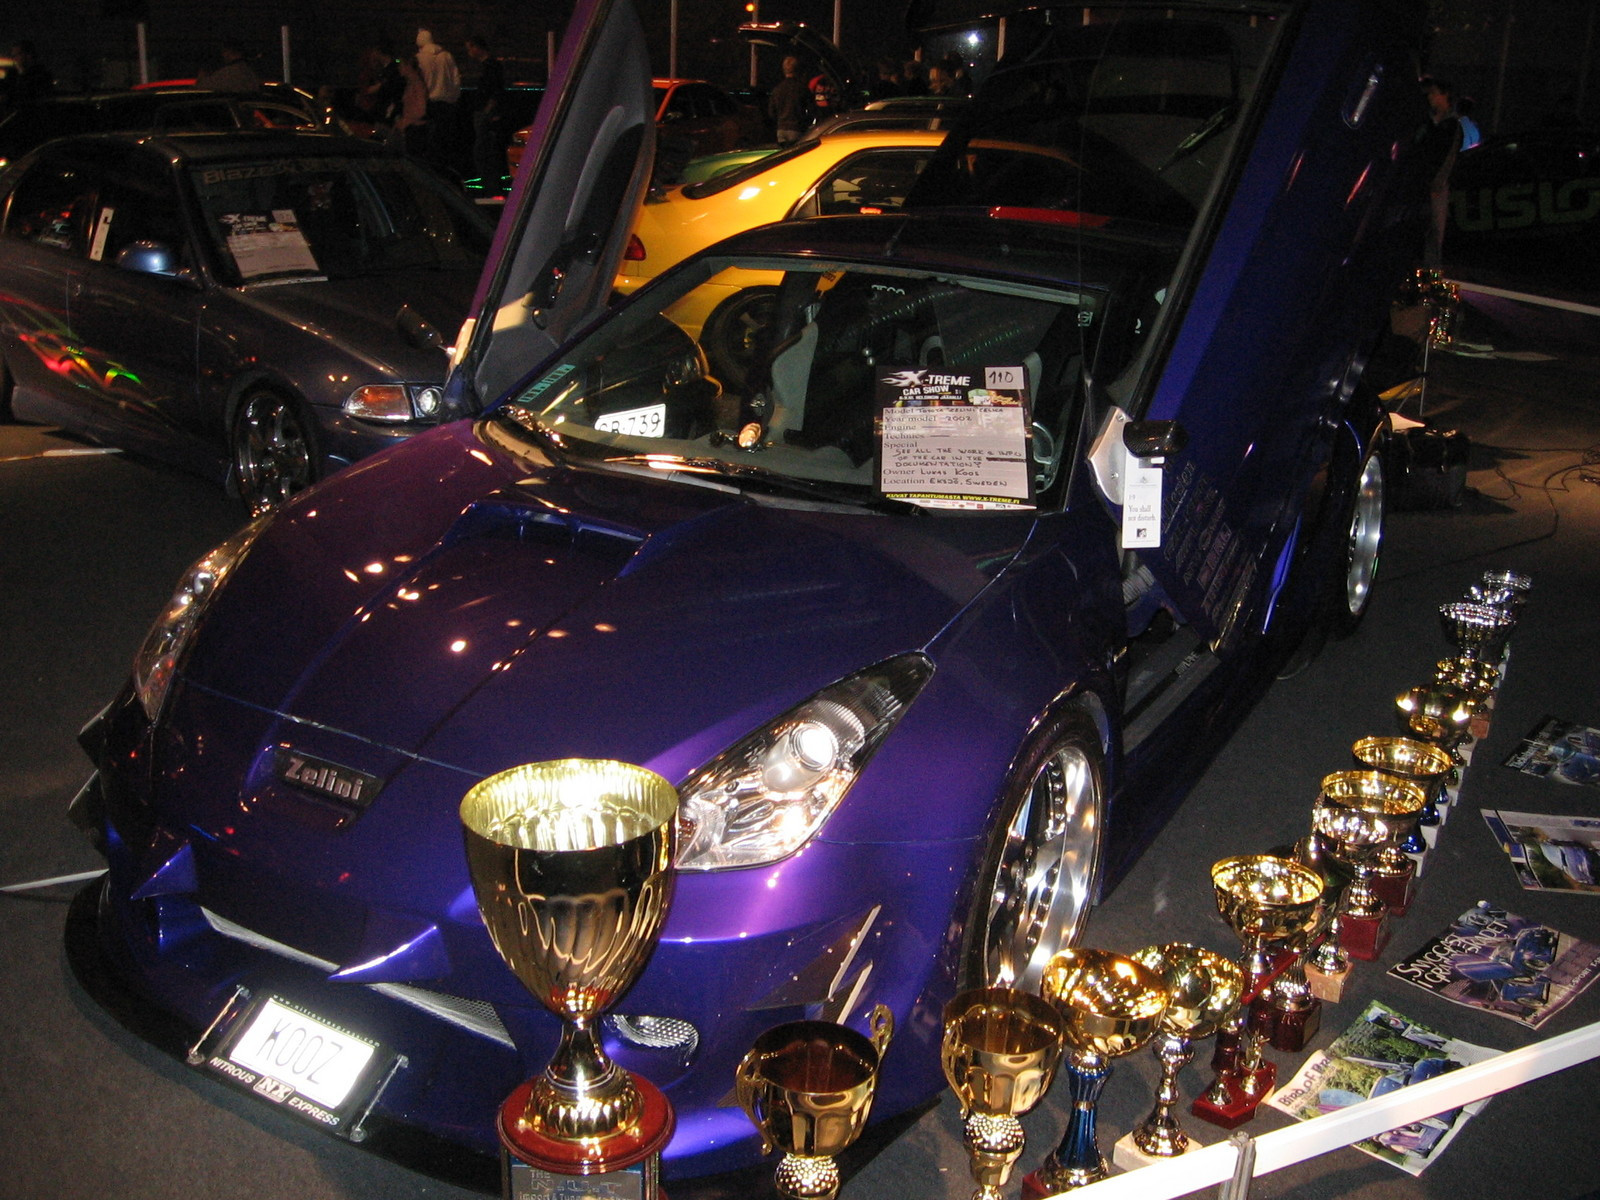 X-treme Car Show 9.10.2005, Toyota "Zelini" Celica by Kooz